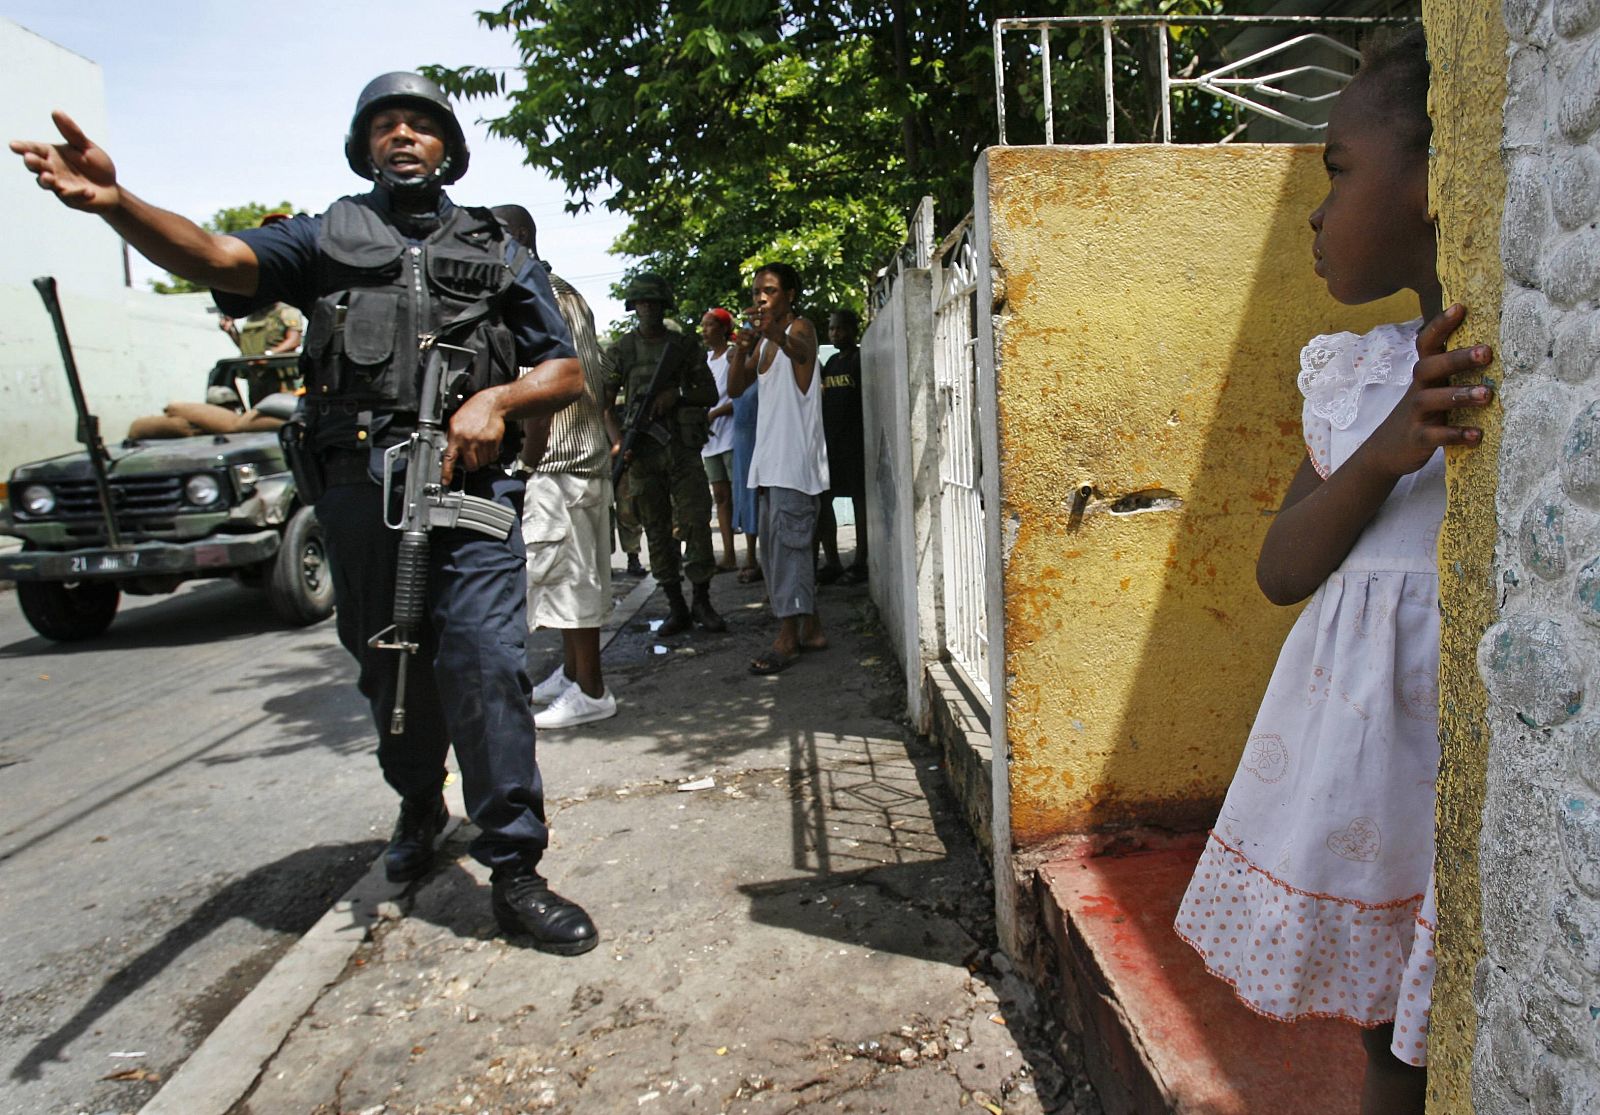 Los soldados han tomado las calles de Kingston, la capital jamaicana, y registran las casas en busca del narcotraficante 'Dudus'.